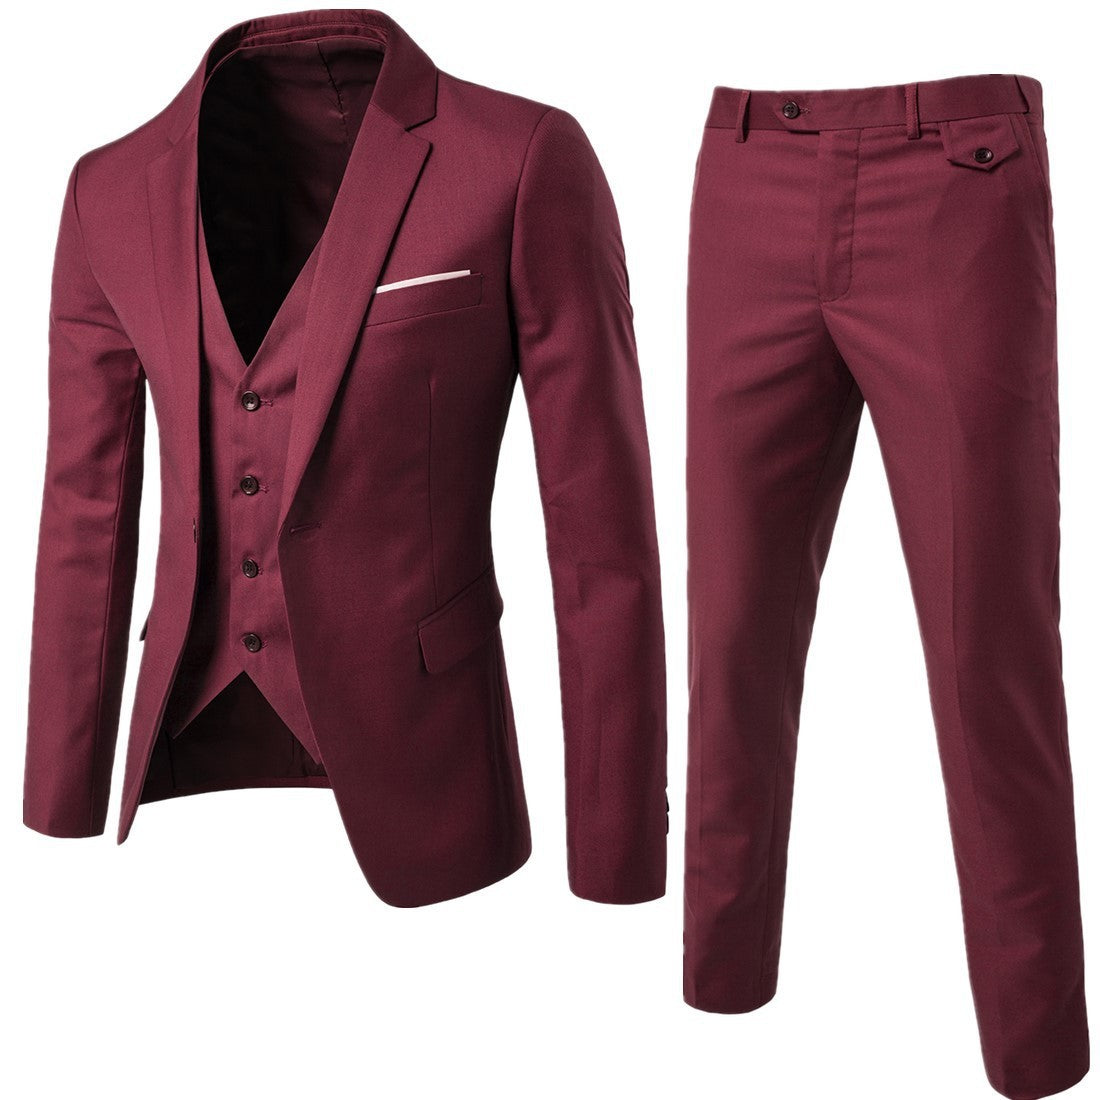 Image of Men Plus Size Casual Cotton Suit (Three-Piece Set)